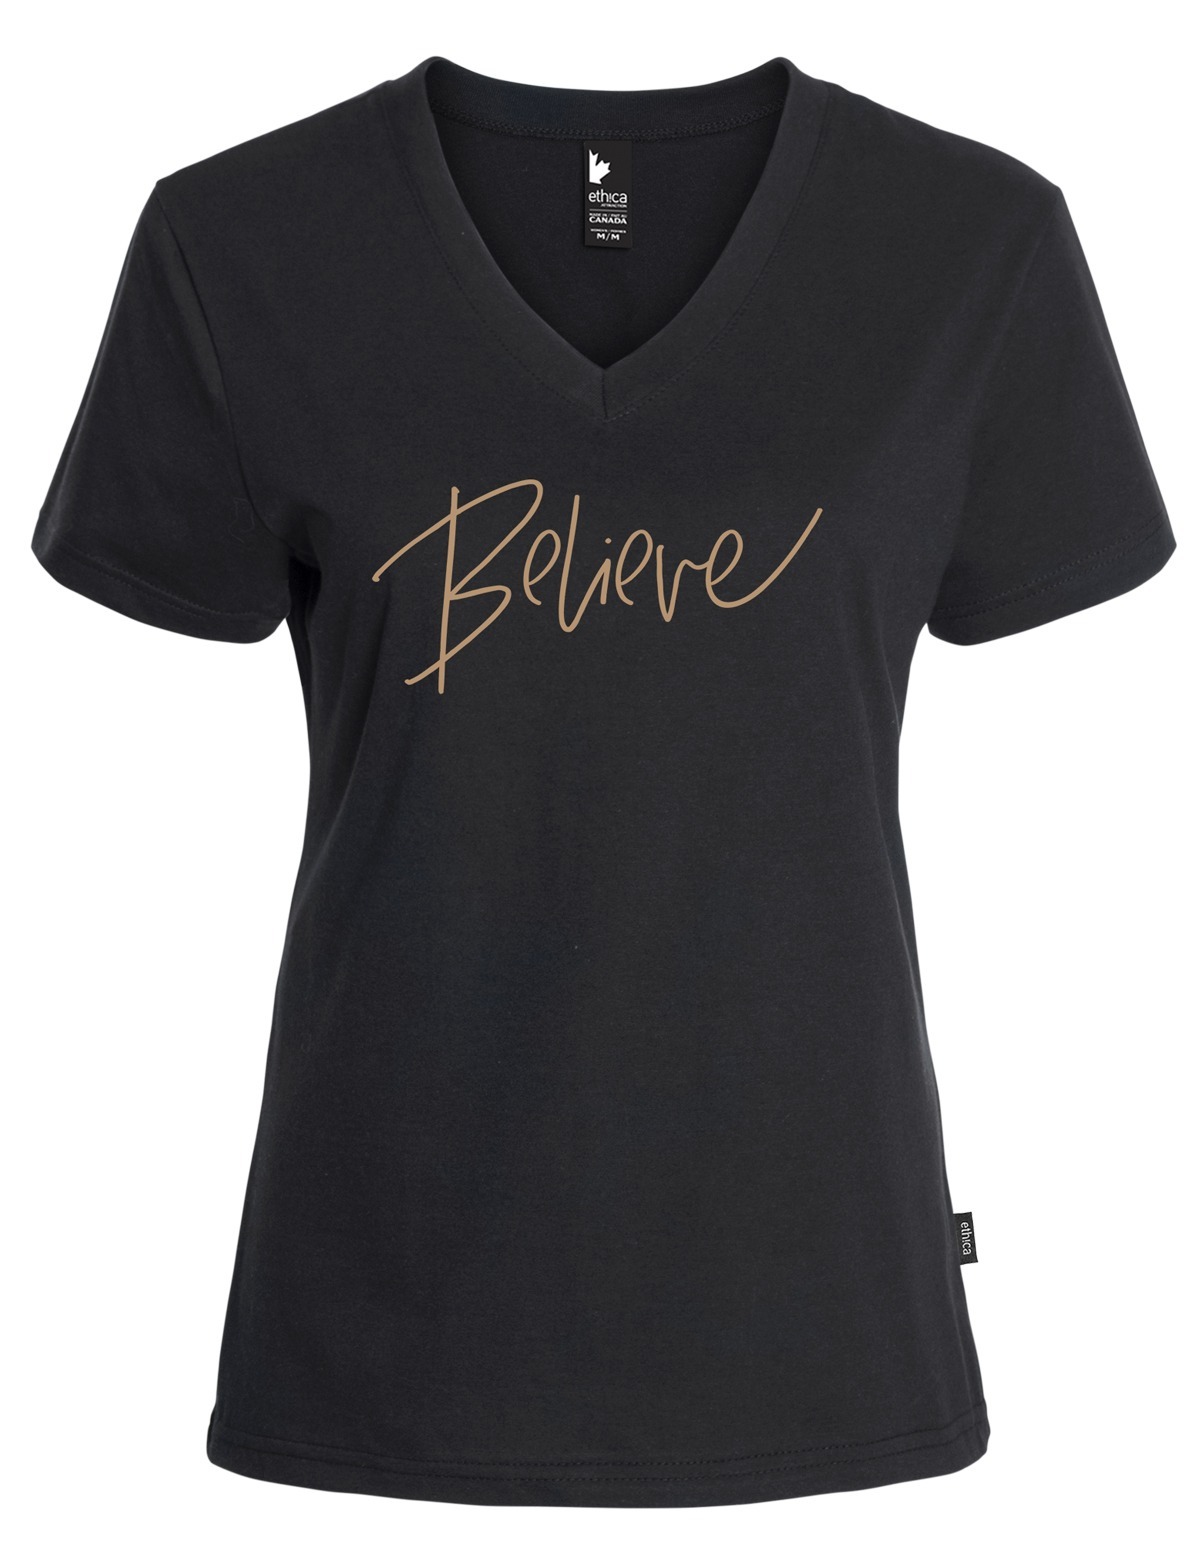 V neck t-shirt - Believe - For women - ethica